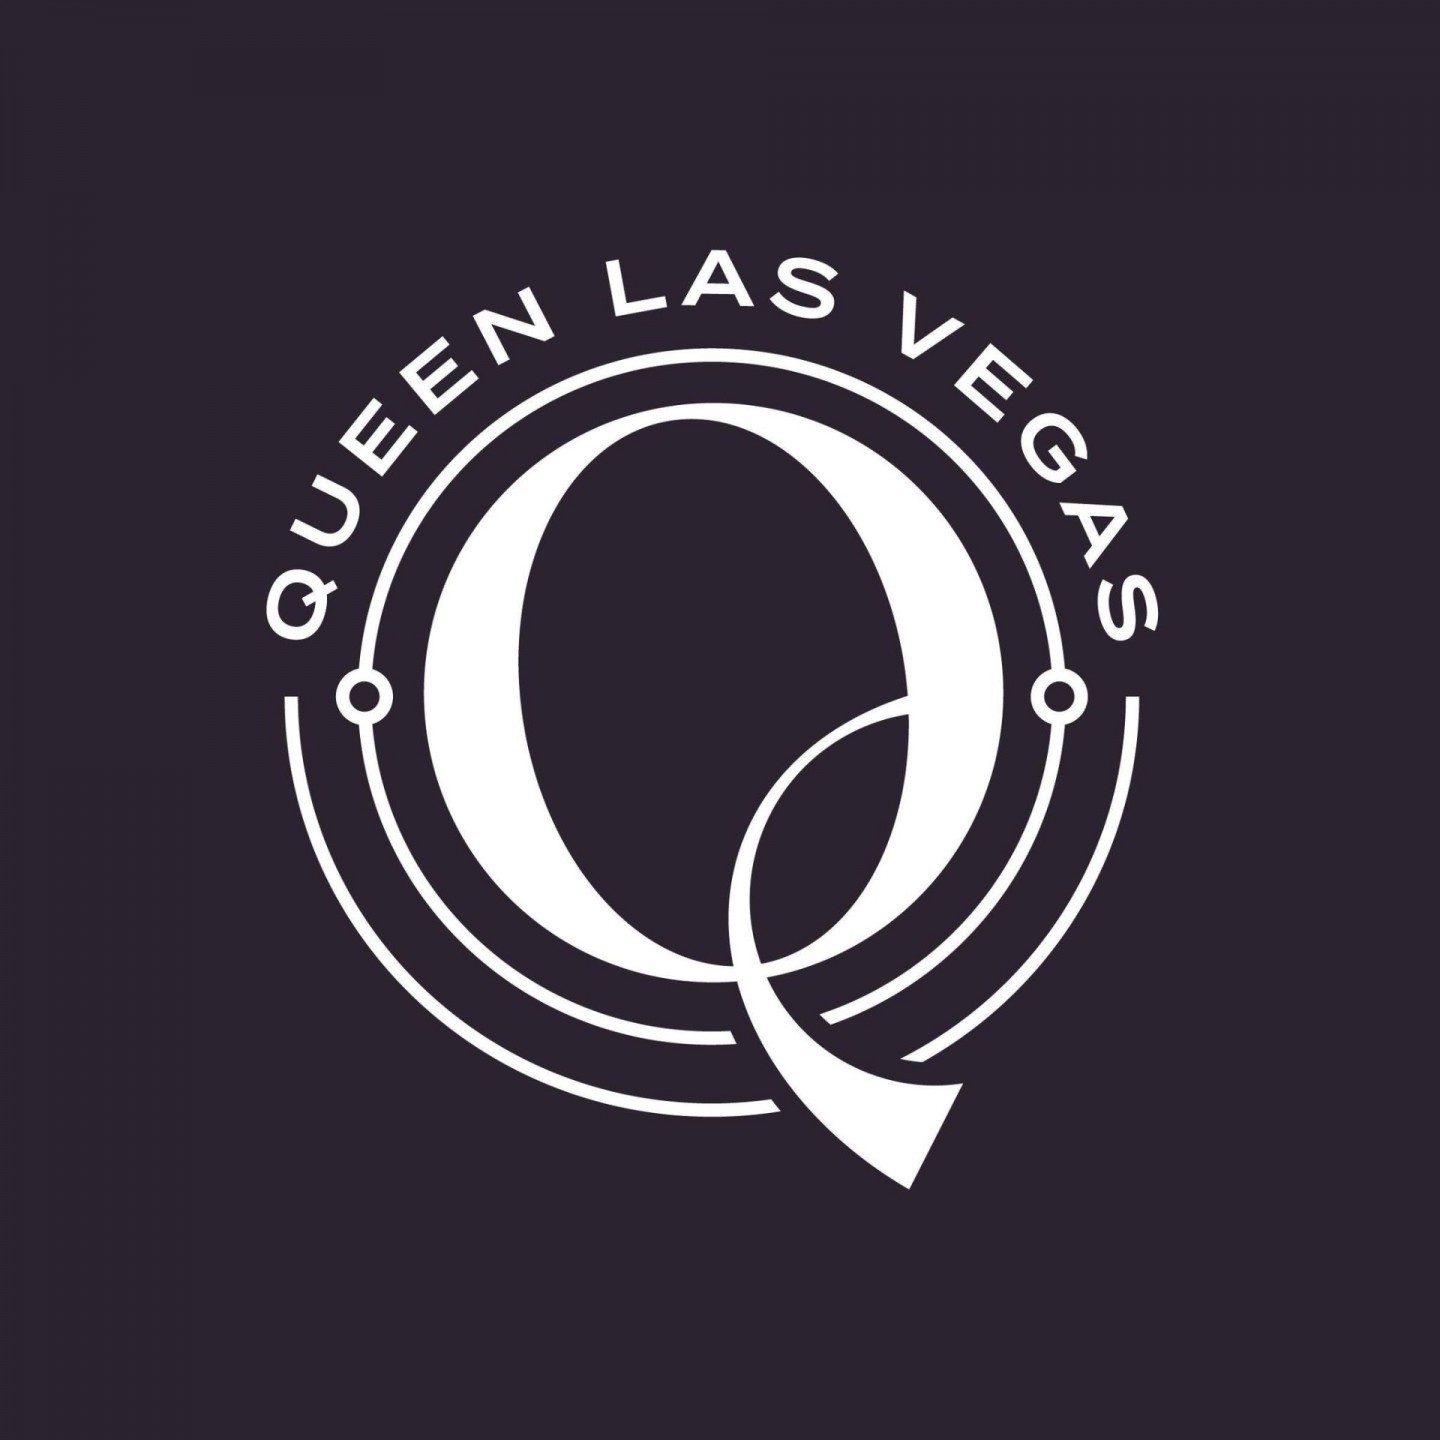 Queen Las Vegas